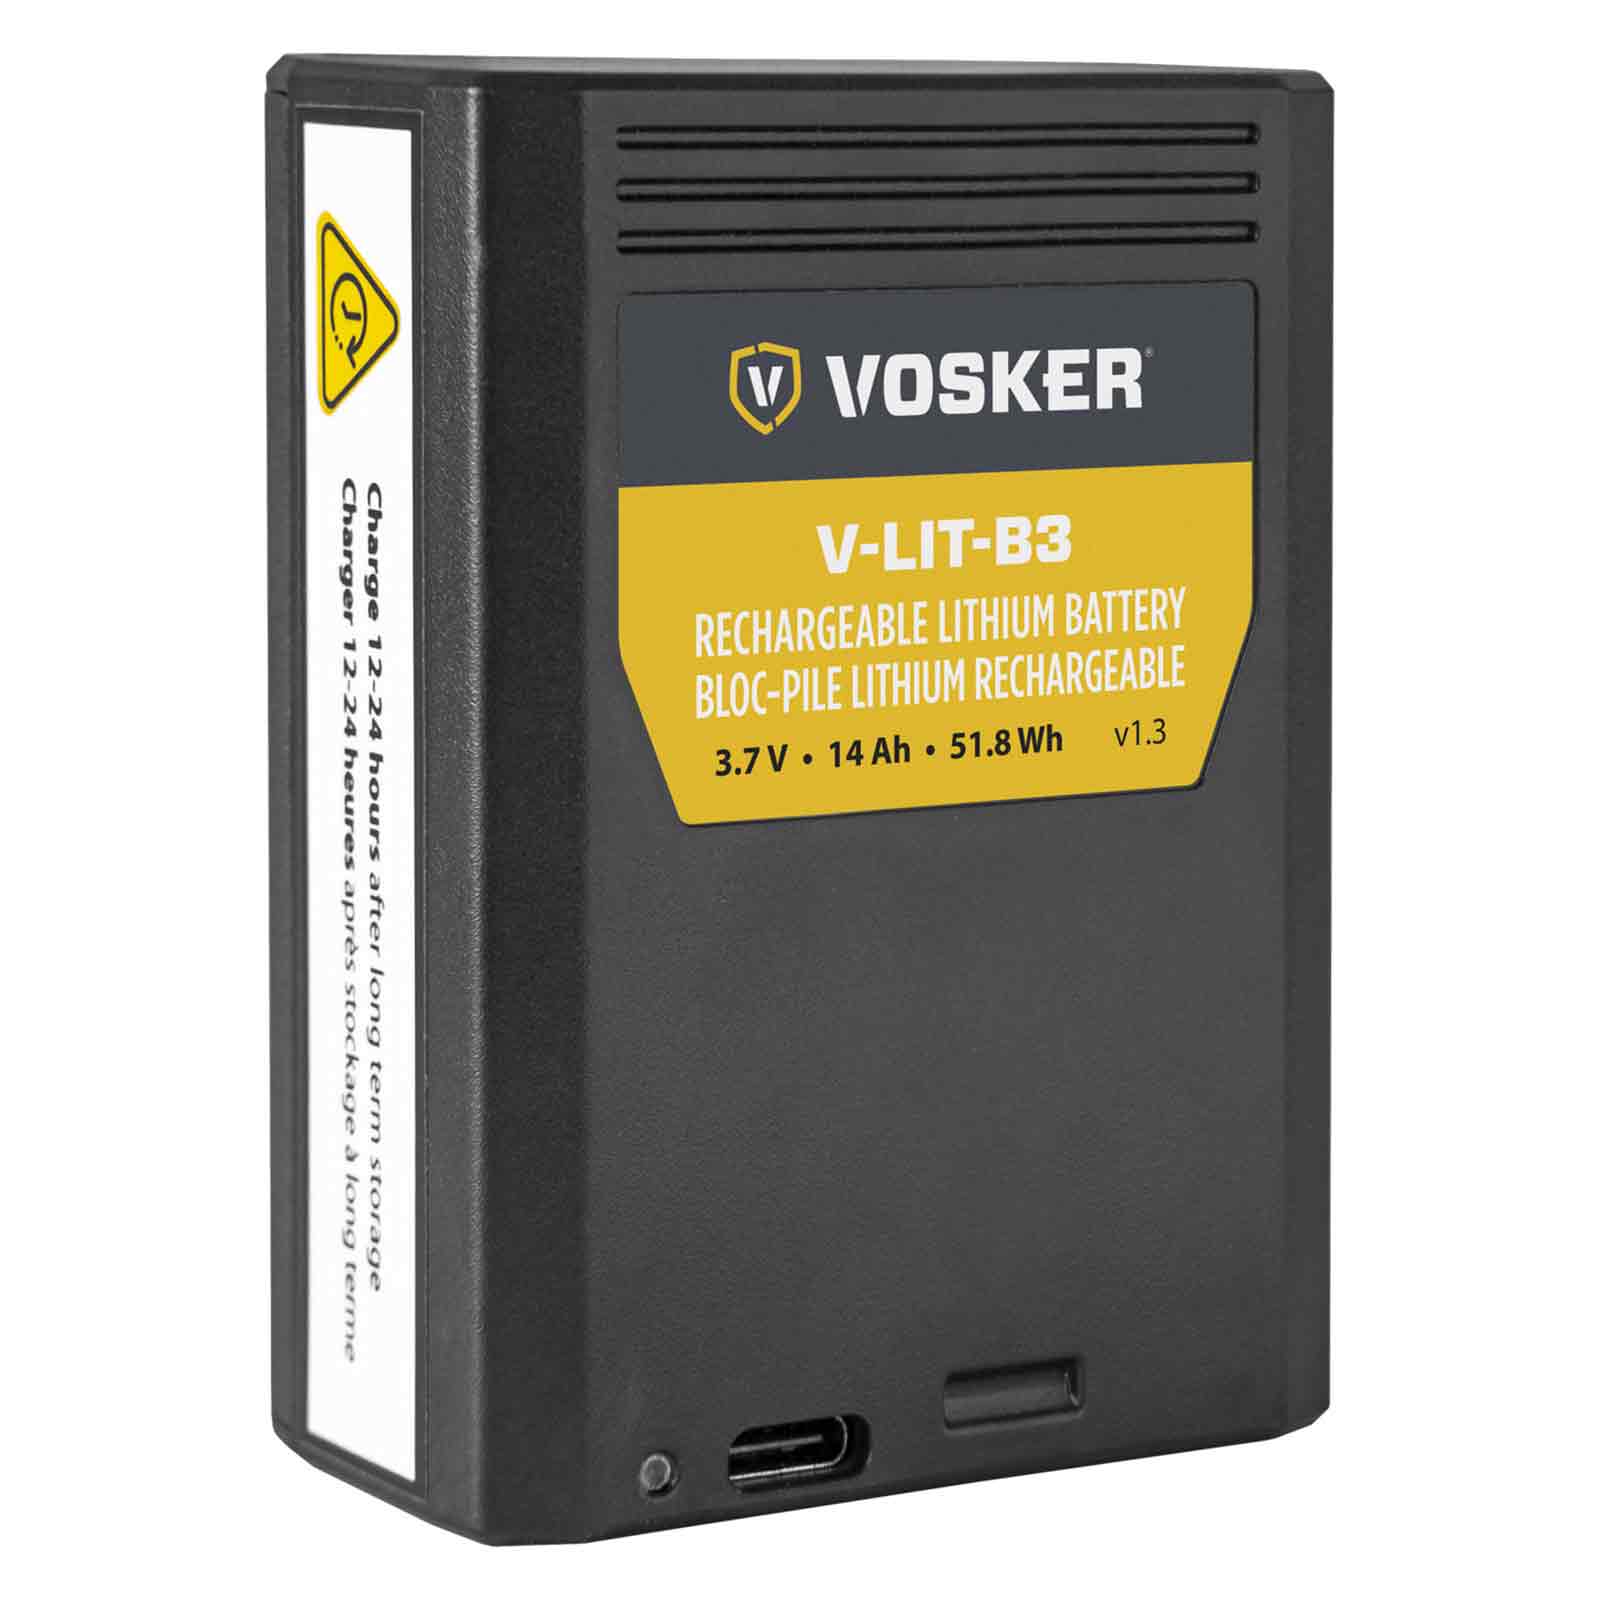 Vosker V-LIT-B3 litiumbatteri